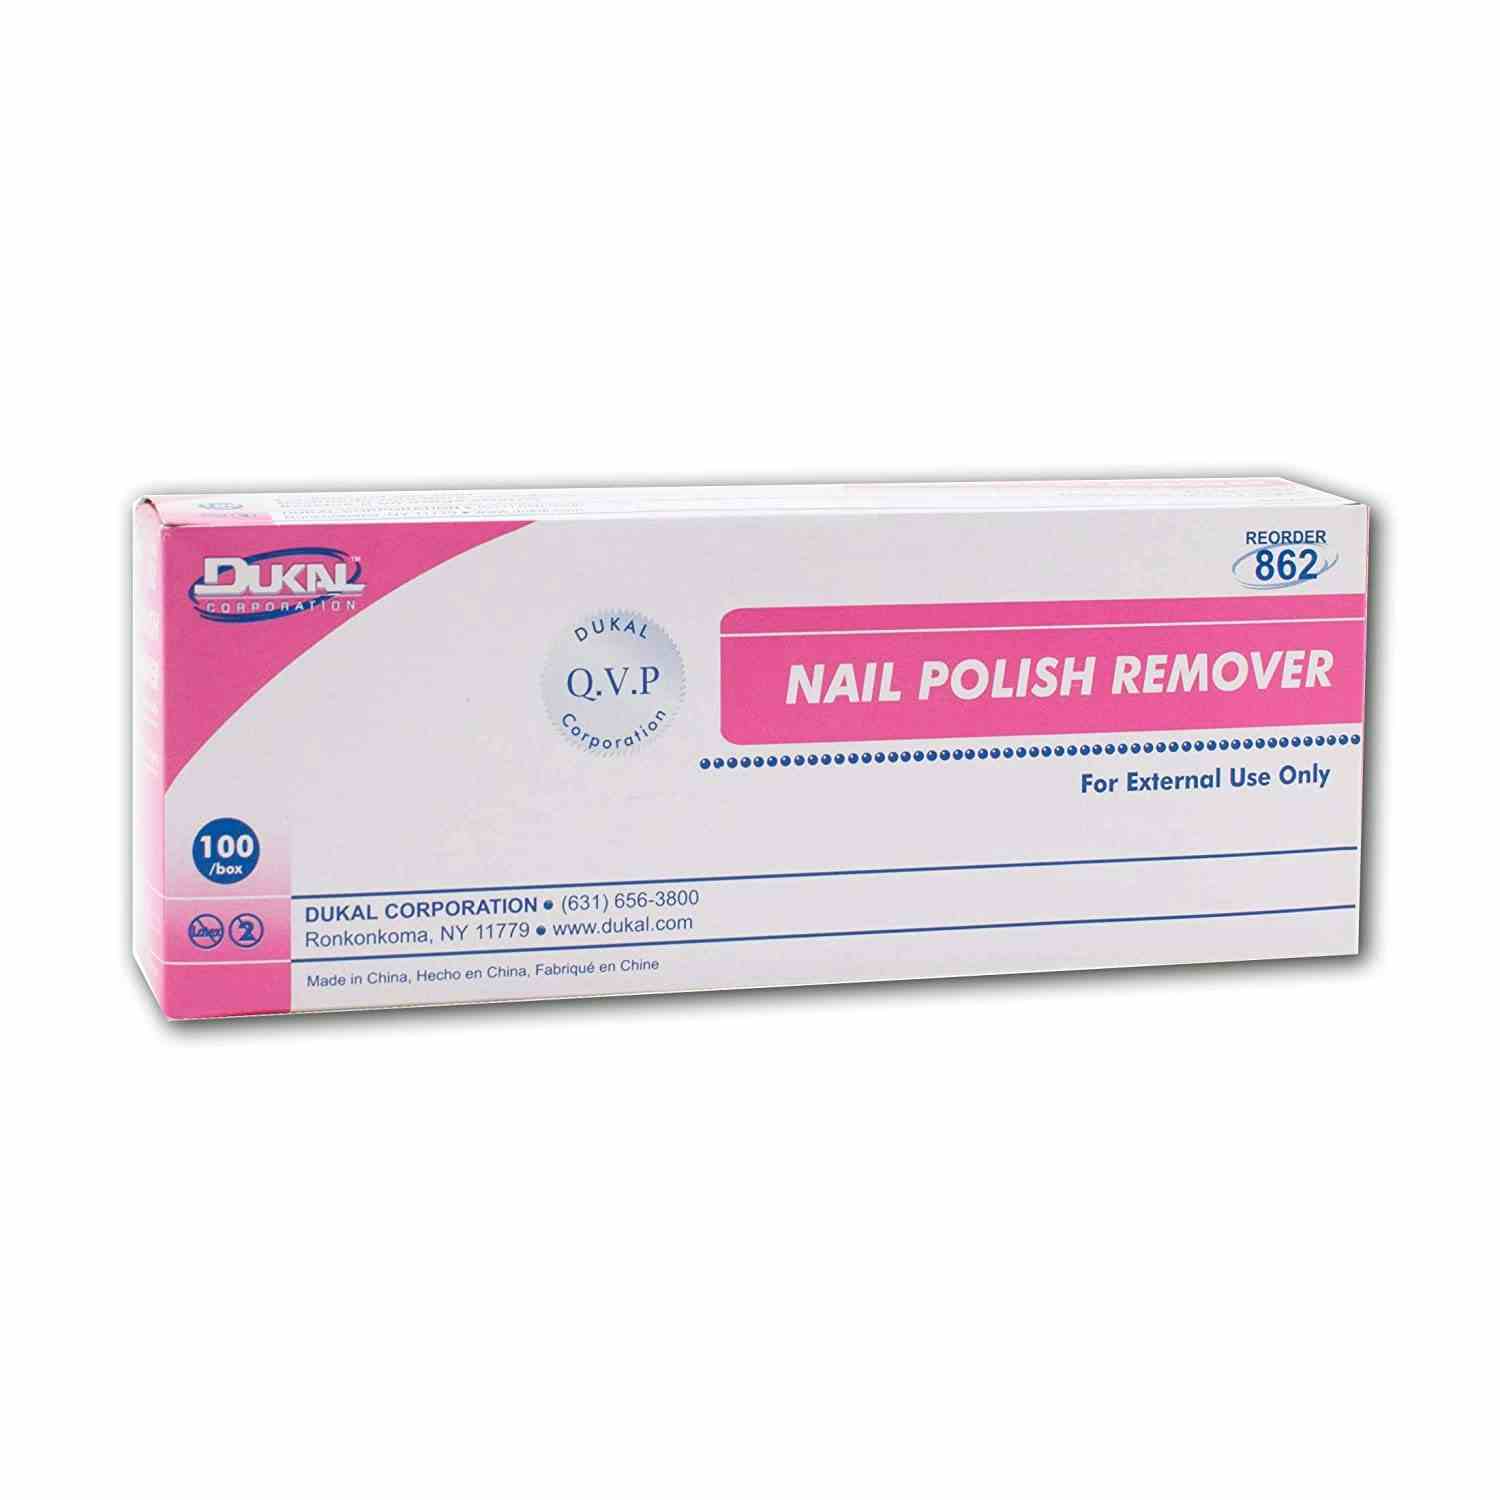 Dukal Nail Polish Remover Pad, 862, Box of 100